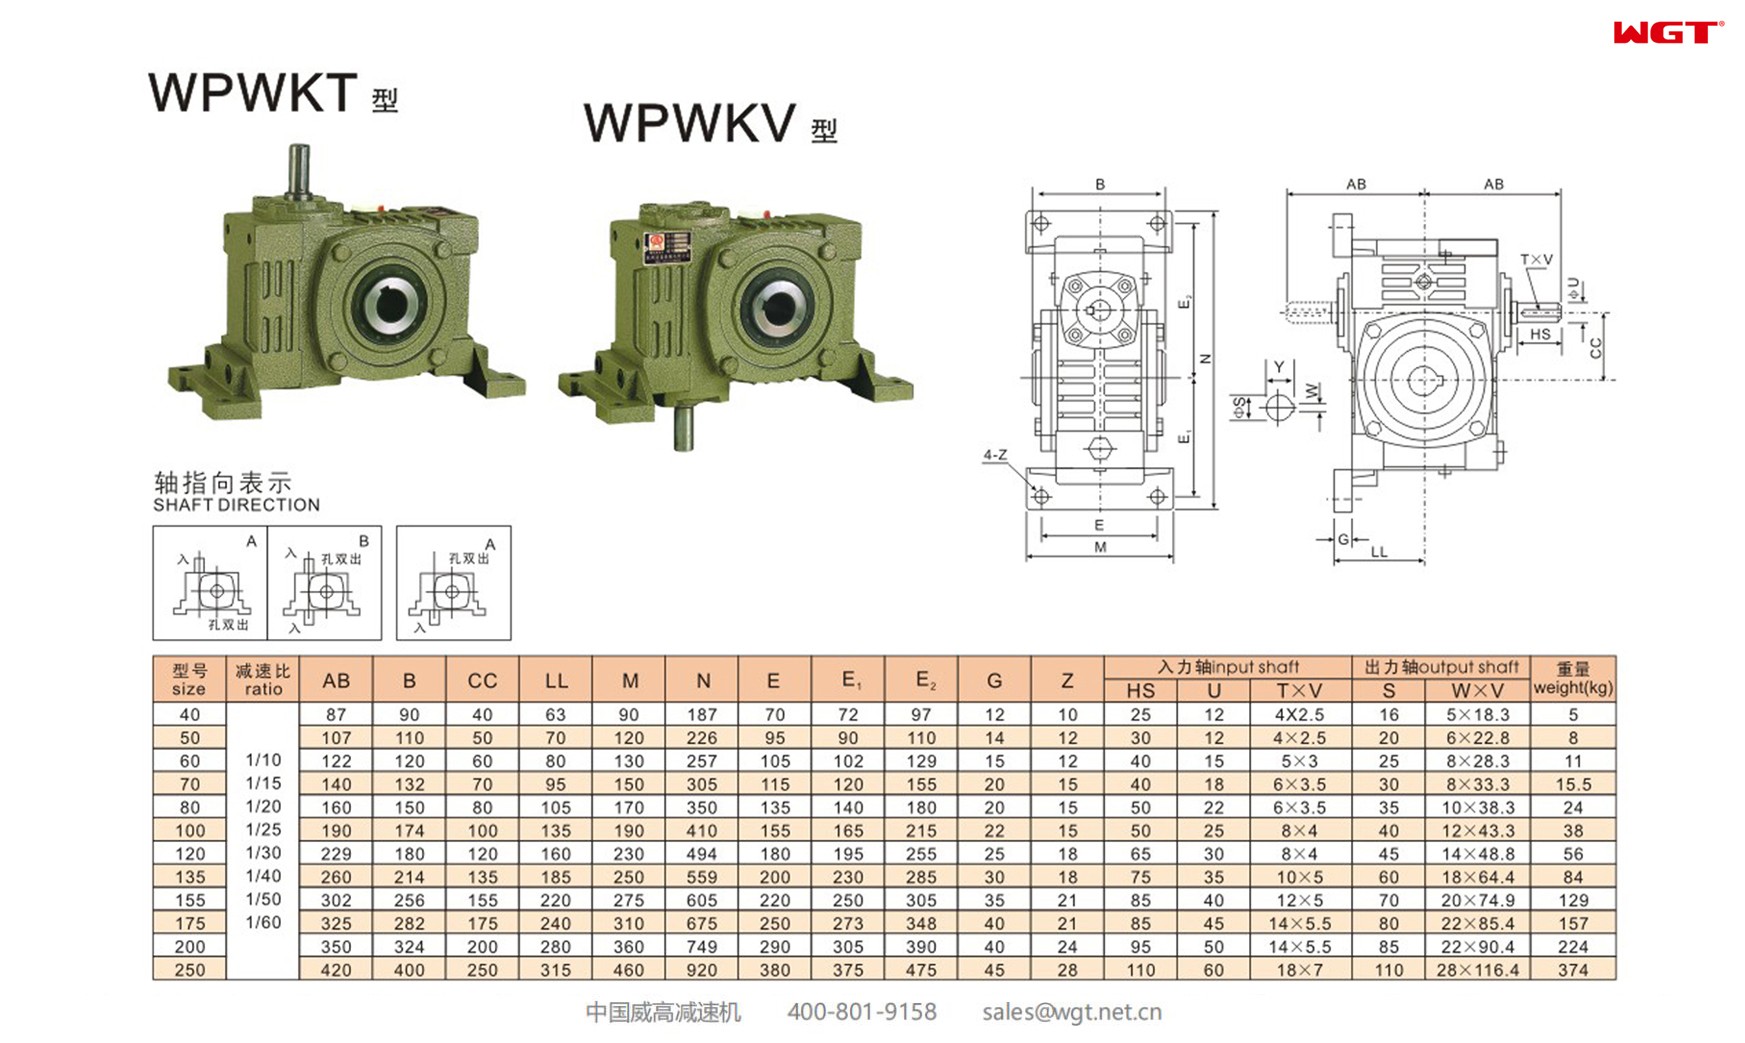 WPWKT200 worm gear reducer universal speed reducer